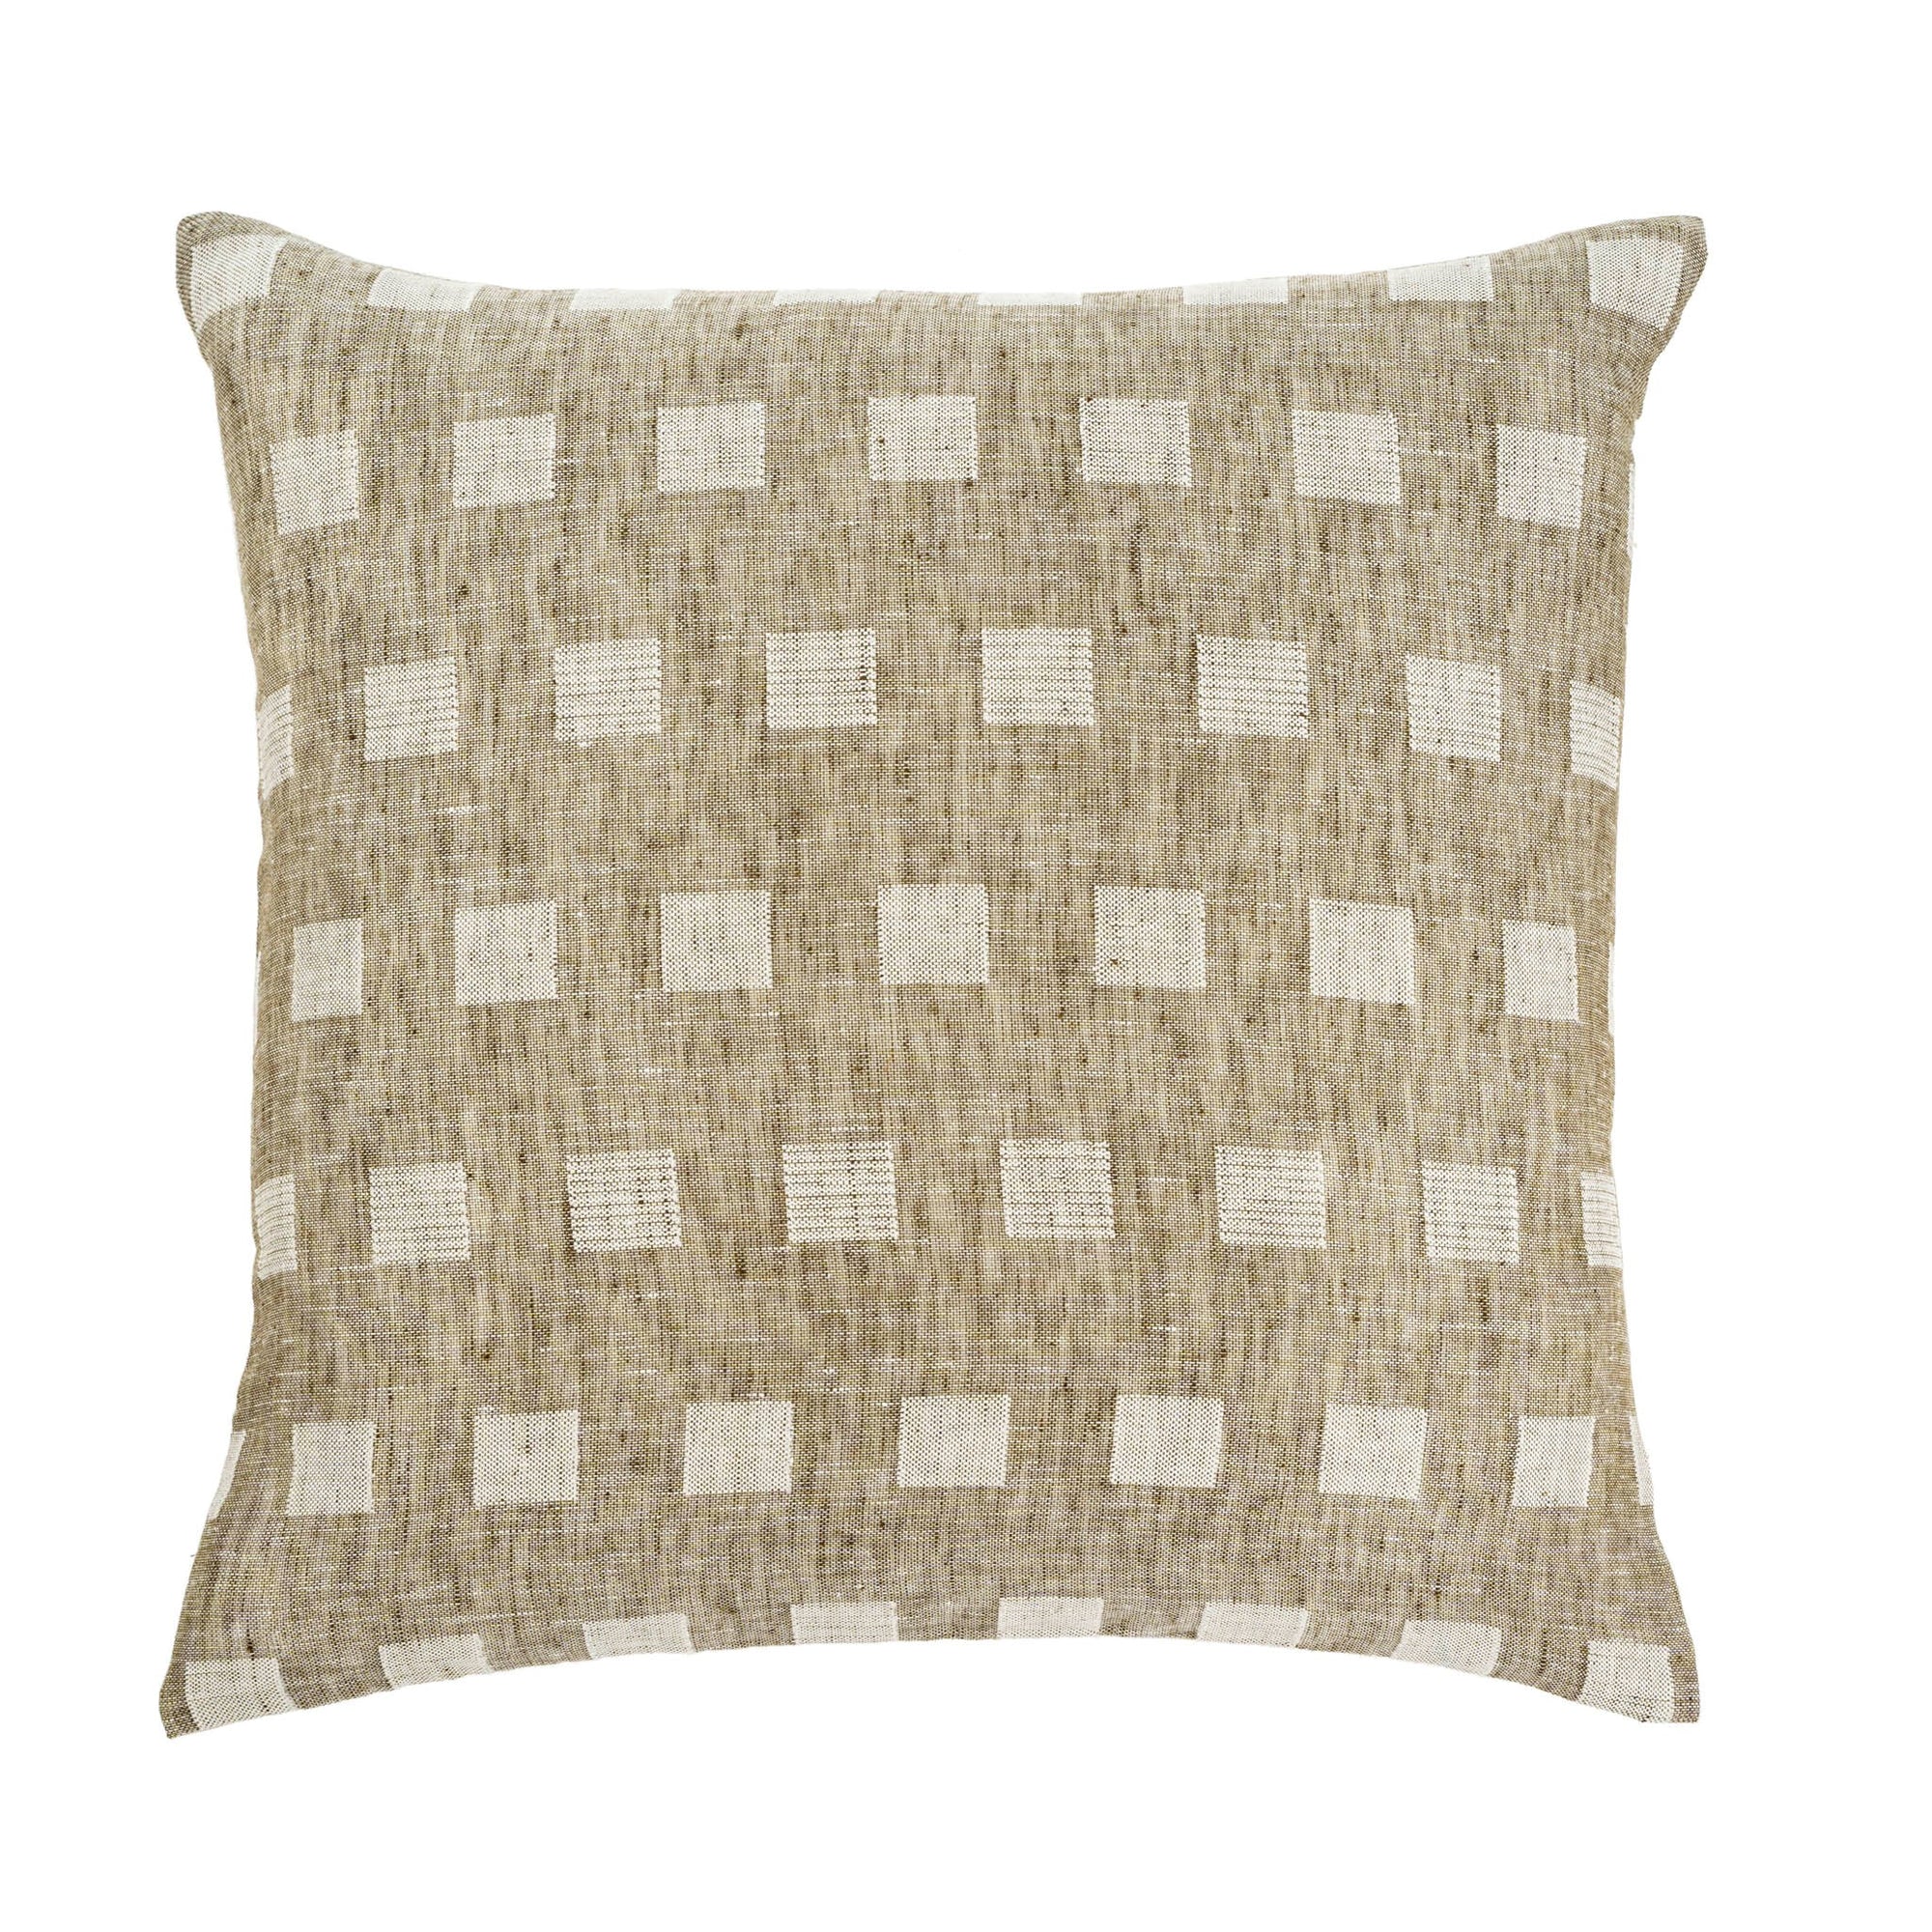 Indaba Check Linen Cushion  1-2162  Natural